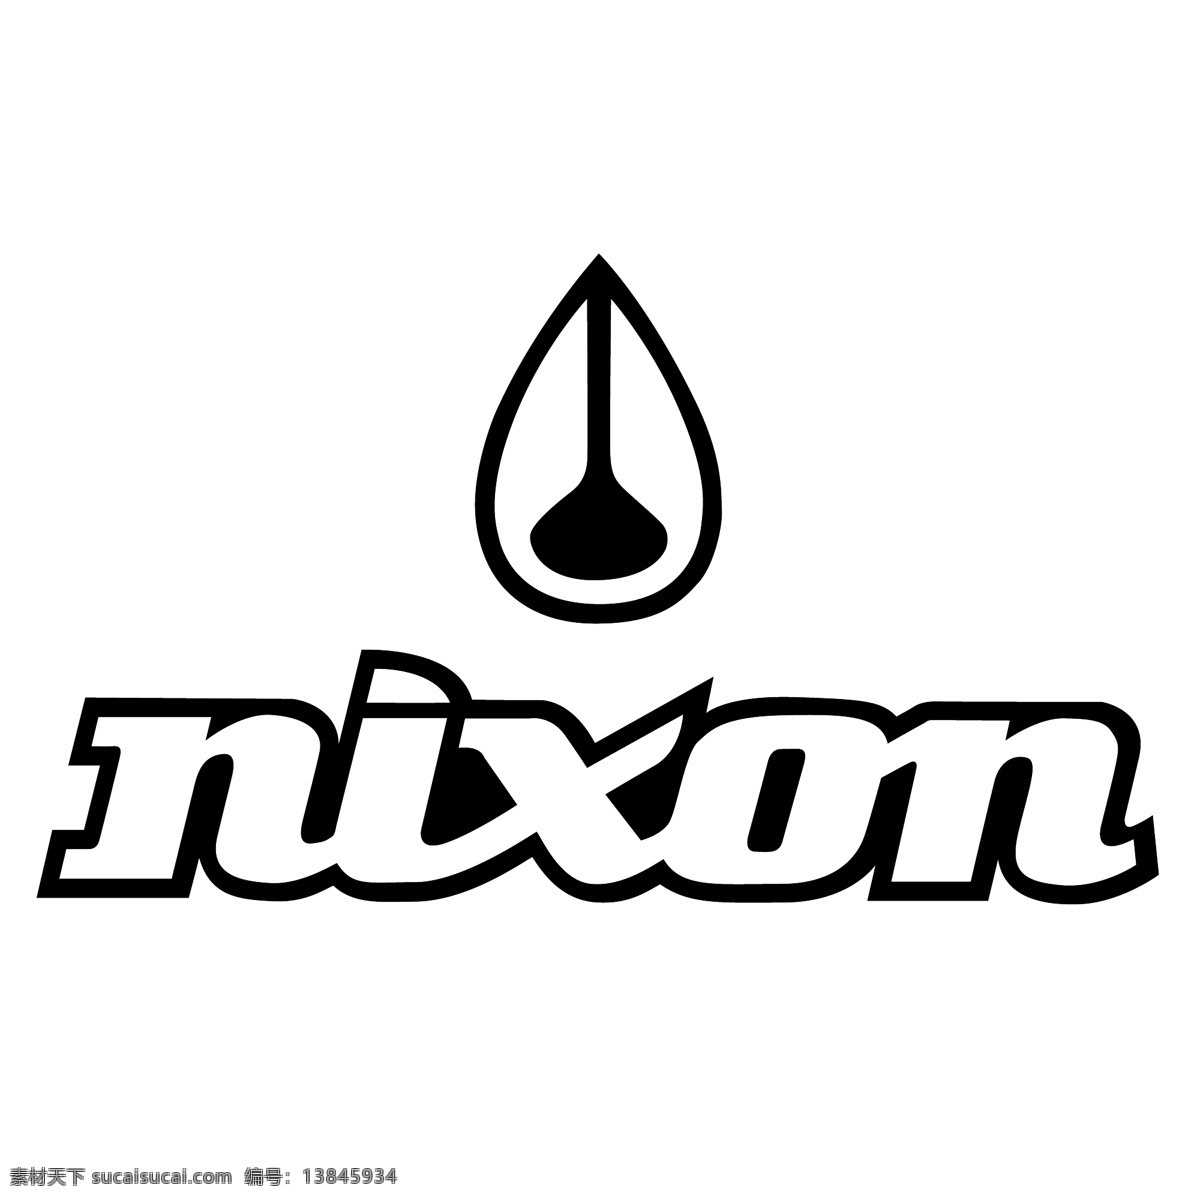 标志矢量图 尼克松 尼克松的标志 矢量 标志 图标 尼克松矢量 建筑家居